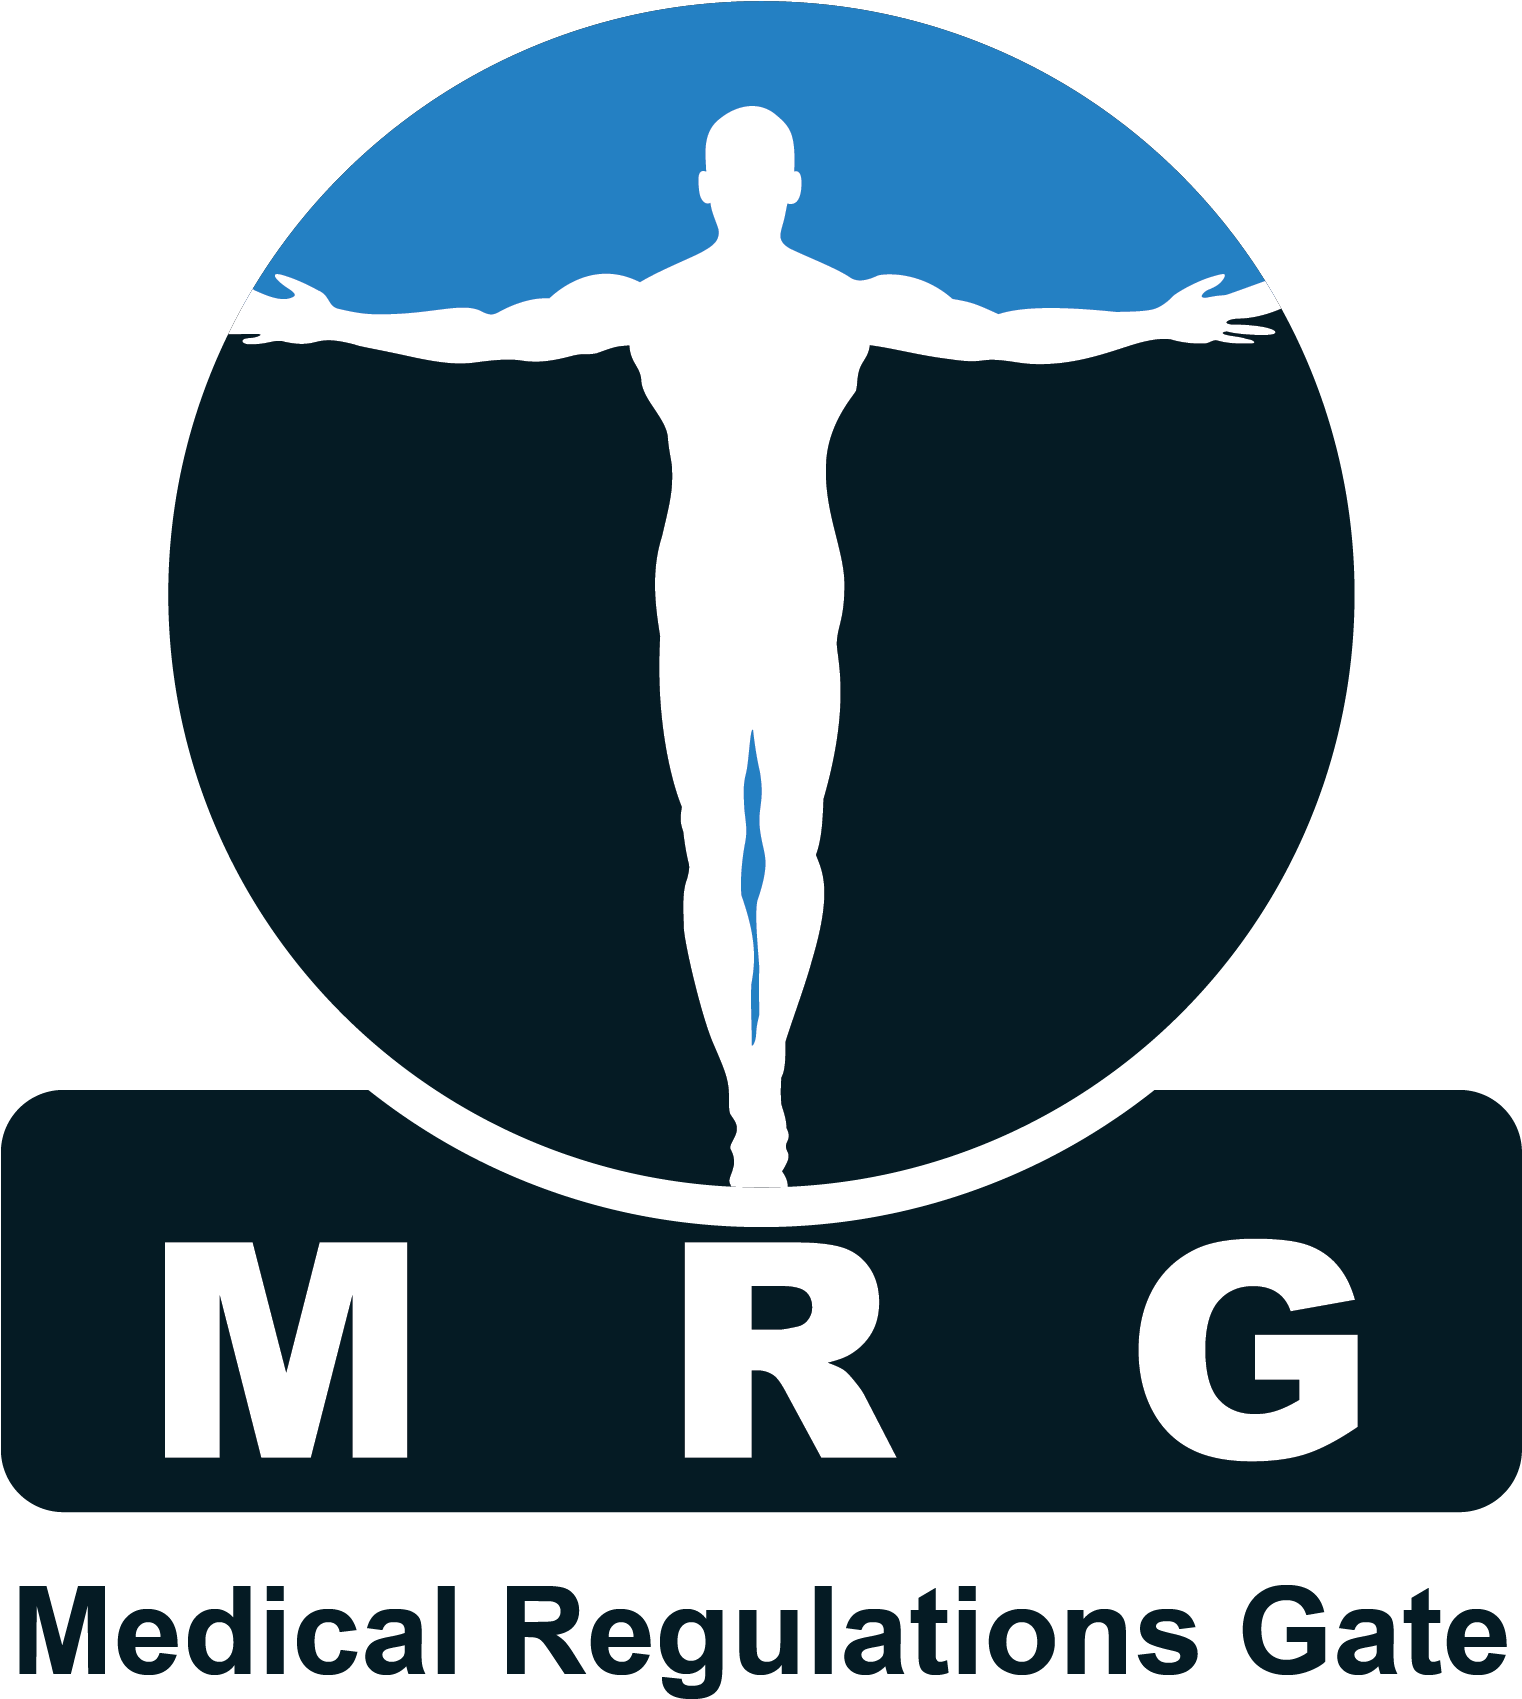 Medical Regulation Gate - Medical Regulations Gate. Mrg (1521x1733), Png Download